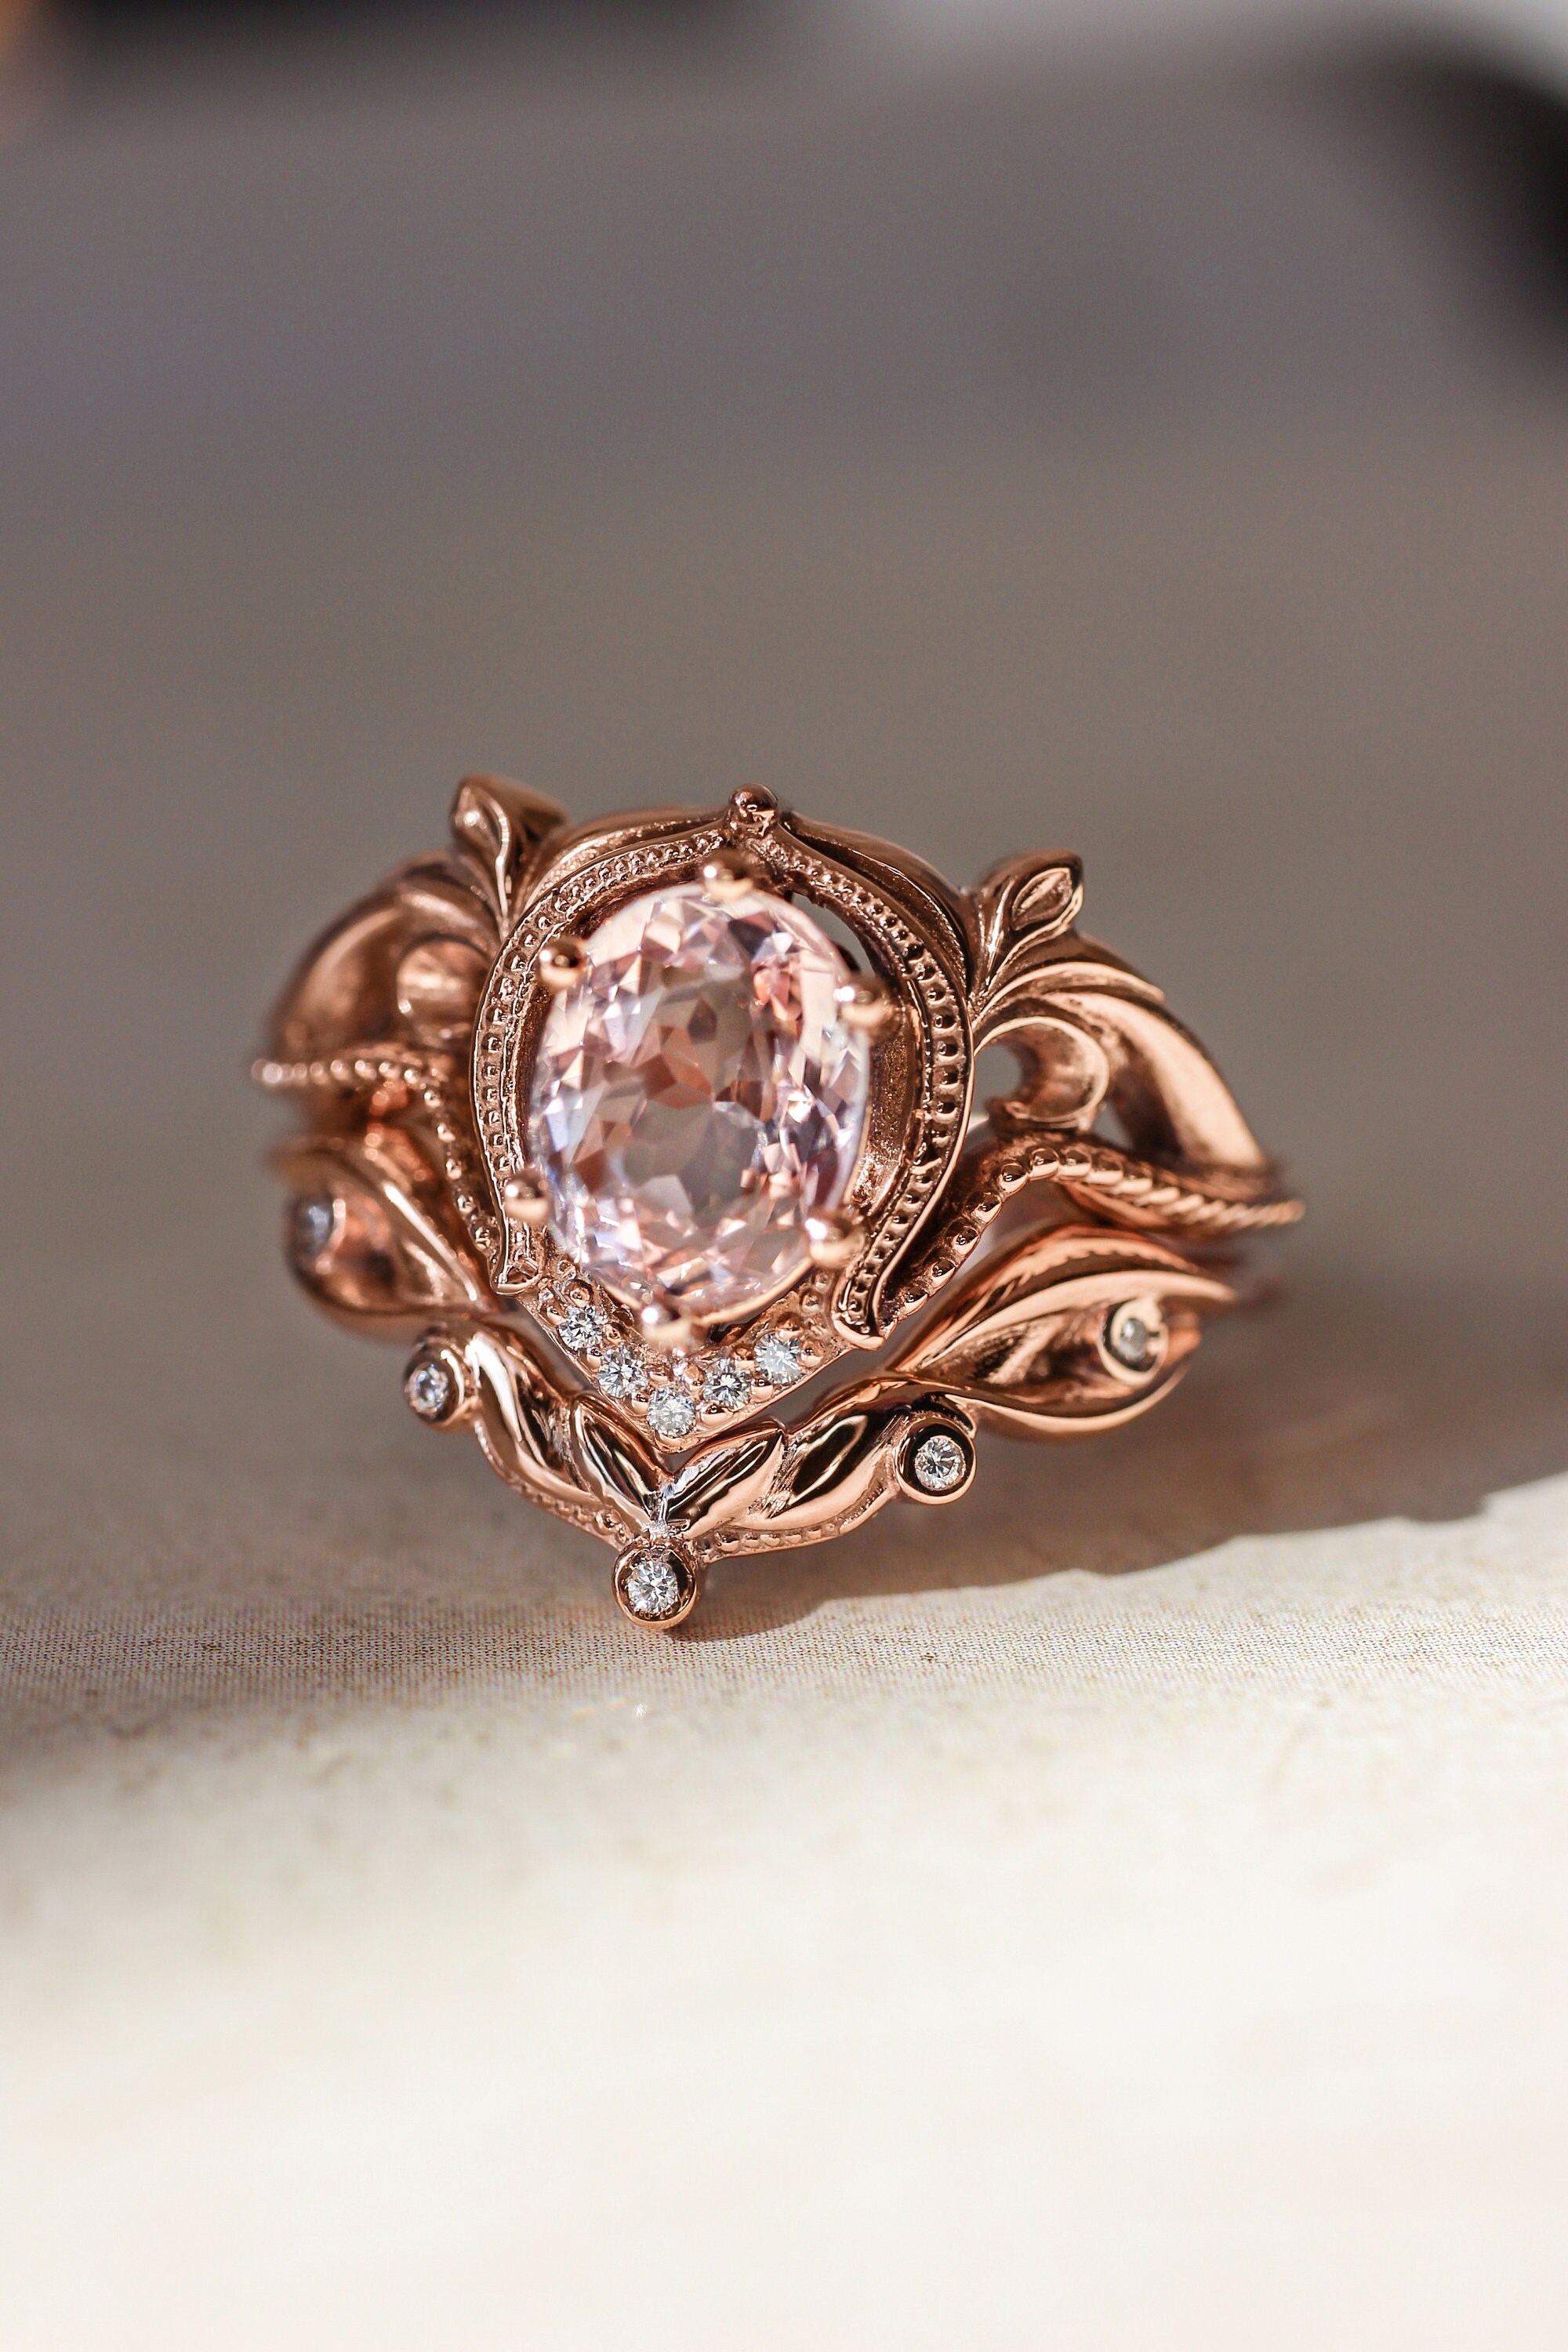 Morganite engagement ring set rose gold bridal ring set art | Etsy